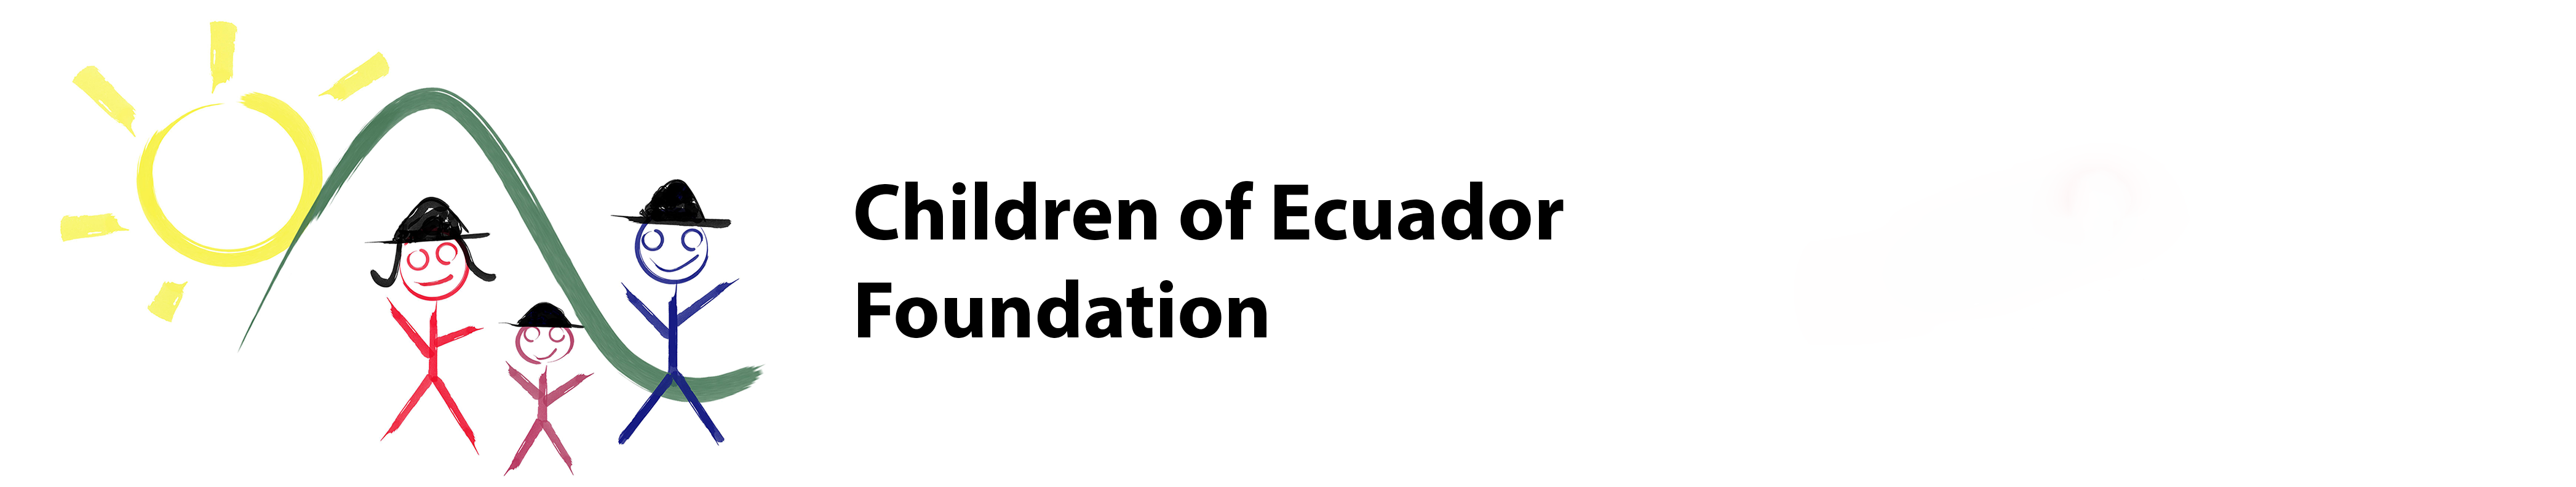 Fondation pour les Enfants de l'Équateur